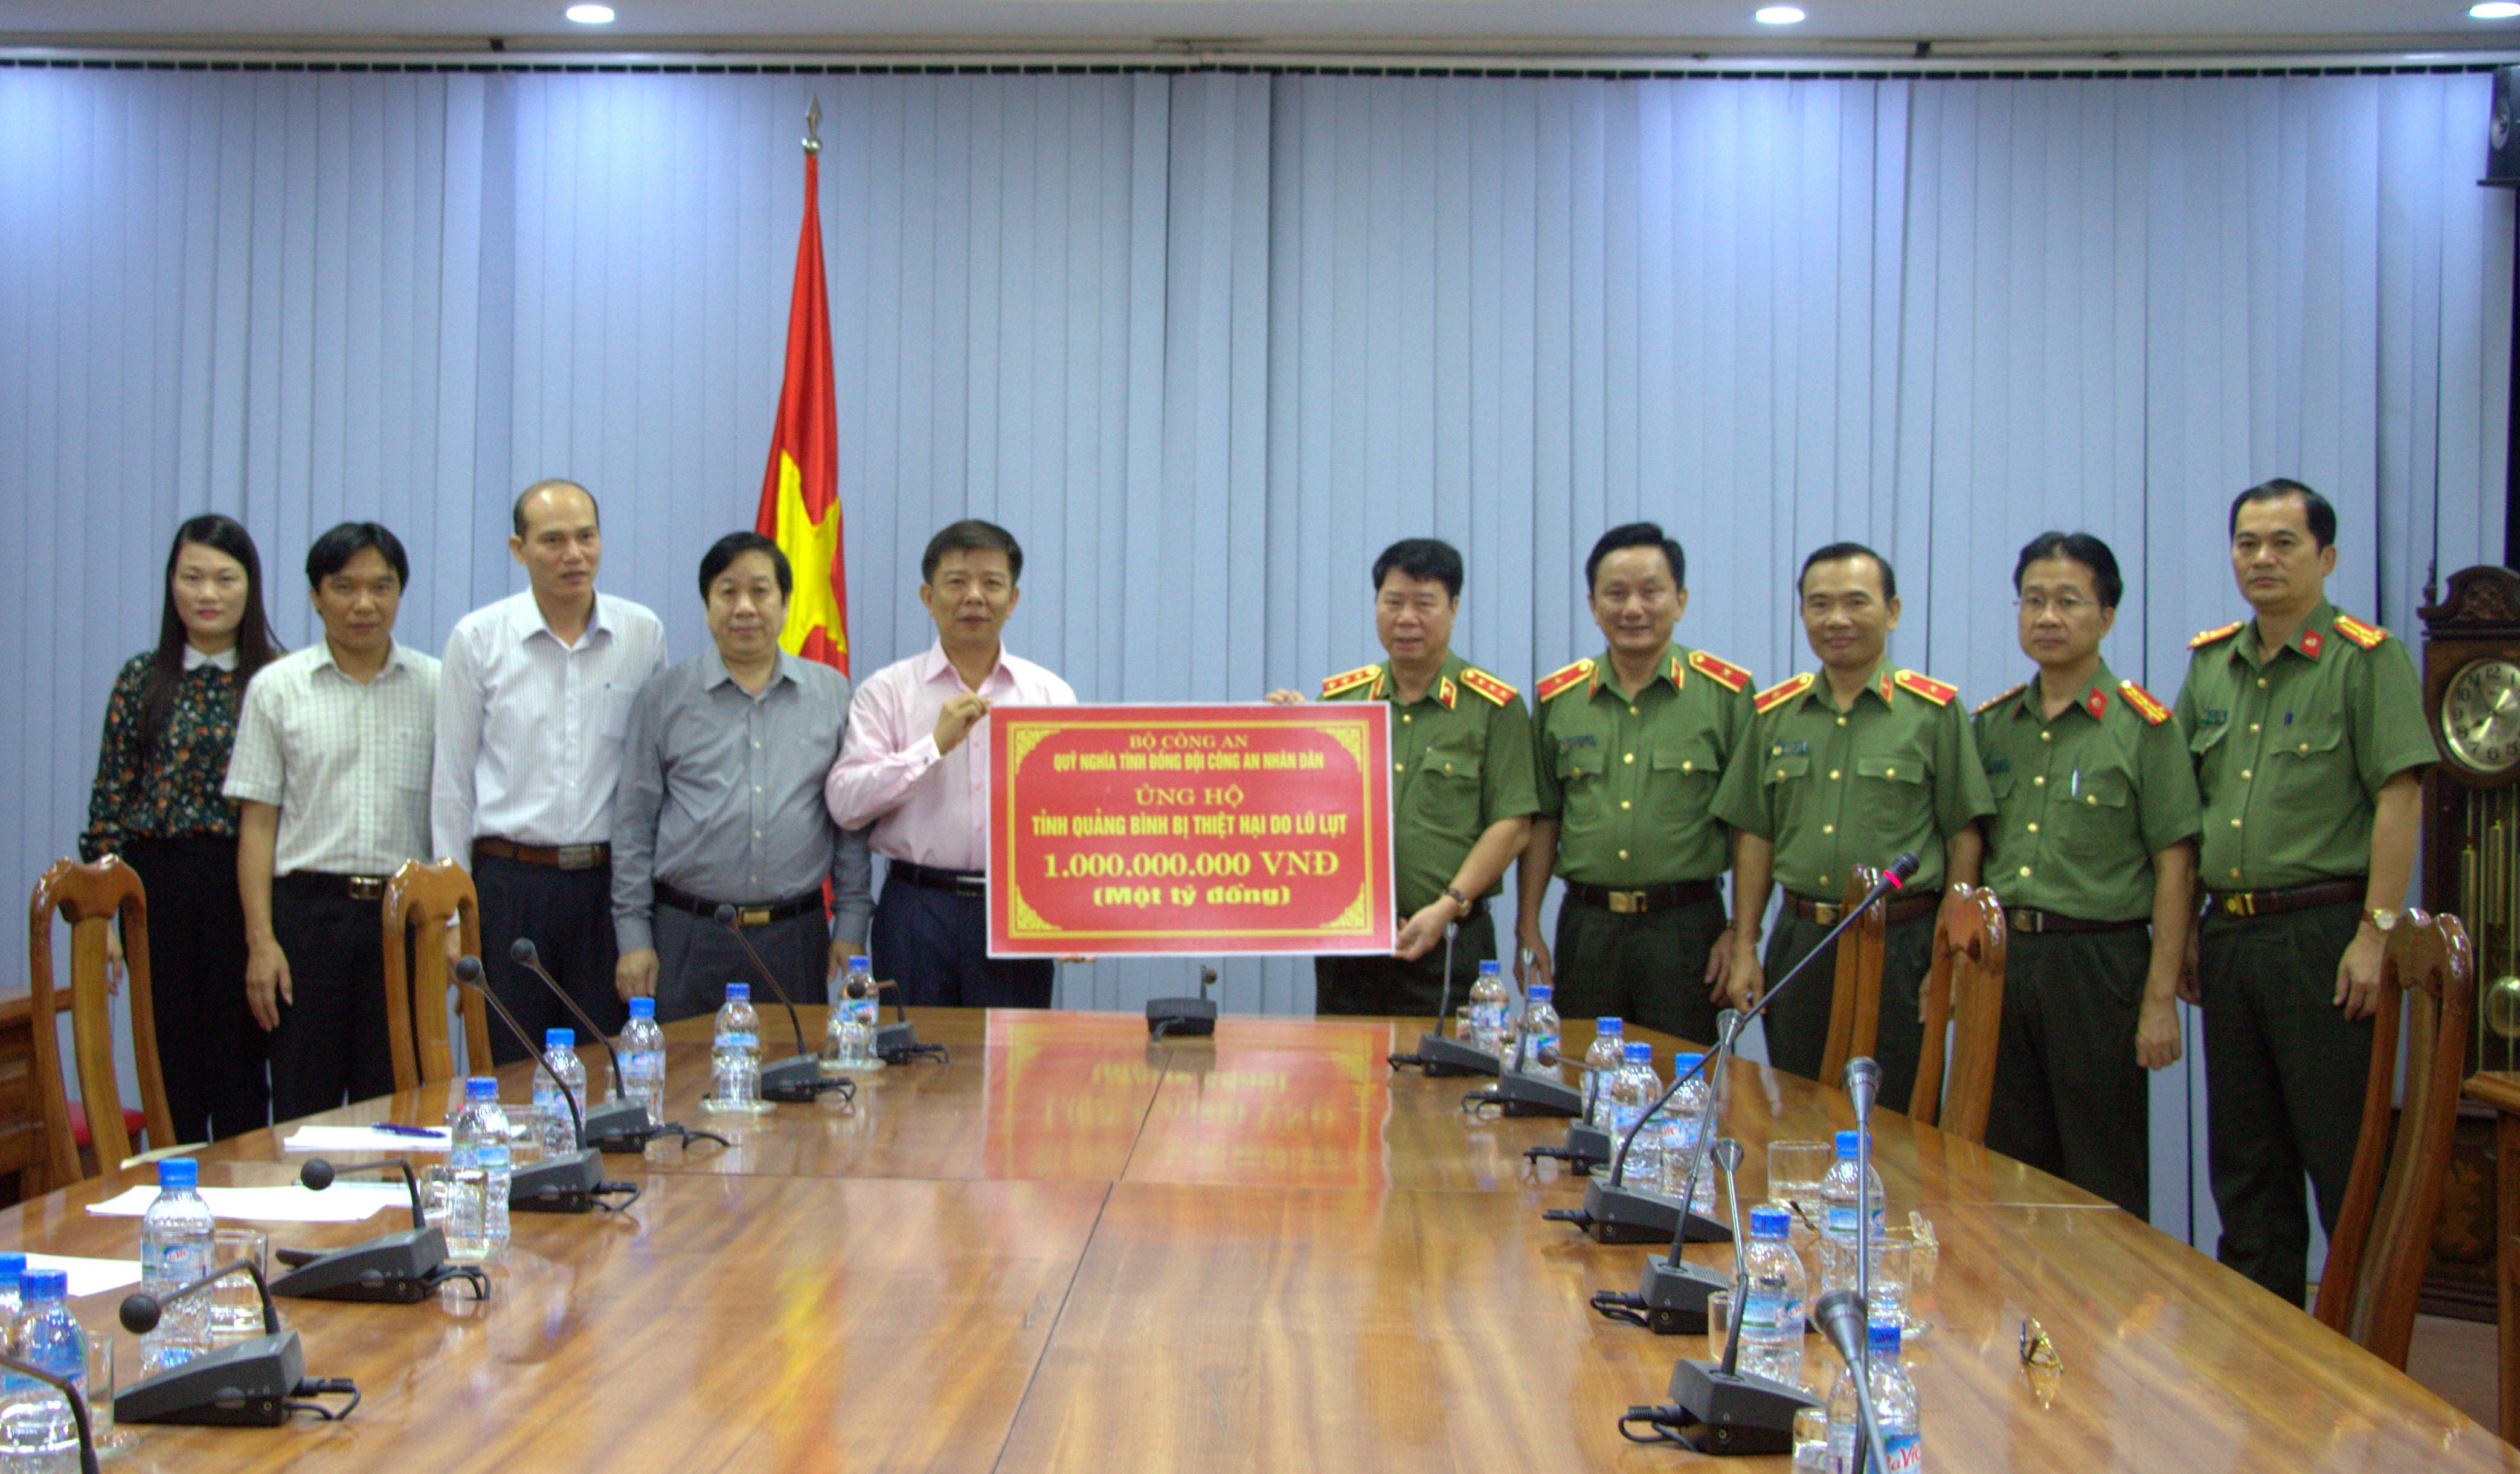 Đồng chí Thượng tướng Bùi Văn Nam, Ủy viên Trung ương Đảng, Thứ trưởng Bộ Công an trao tặng số tiền 1 tỷ đồng hỗ trợ đồng bào bị lũ lụt ở tỉnh Quảng Bình